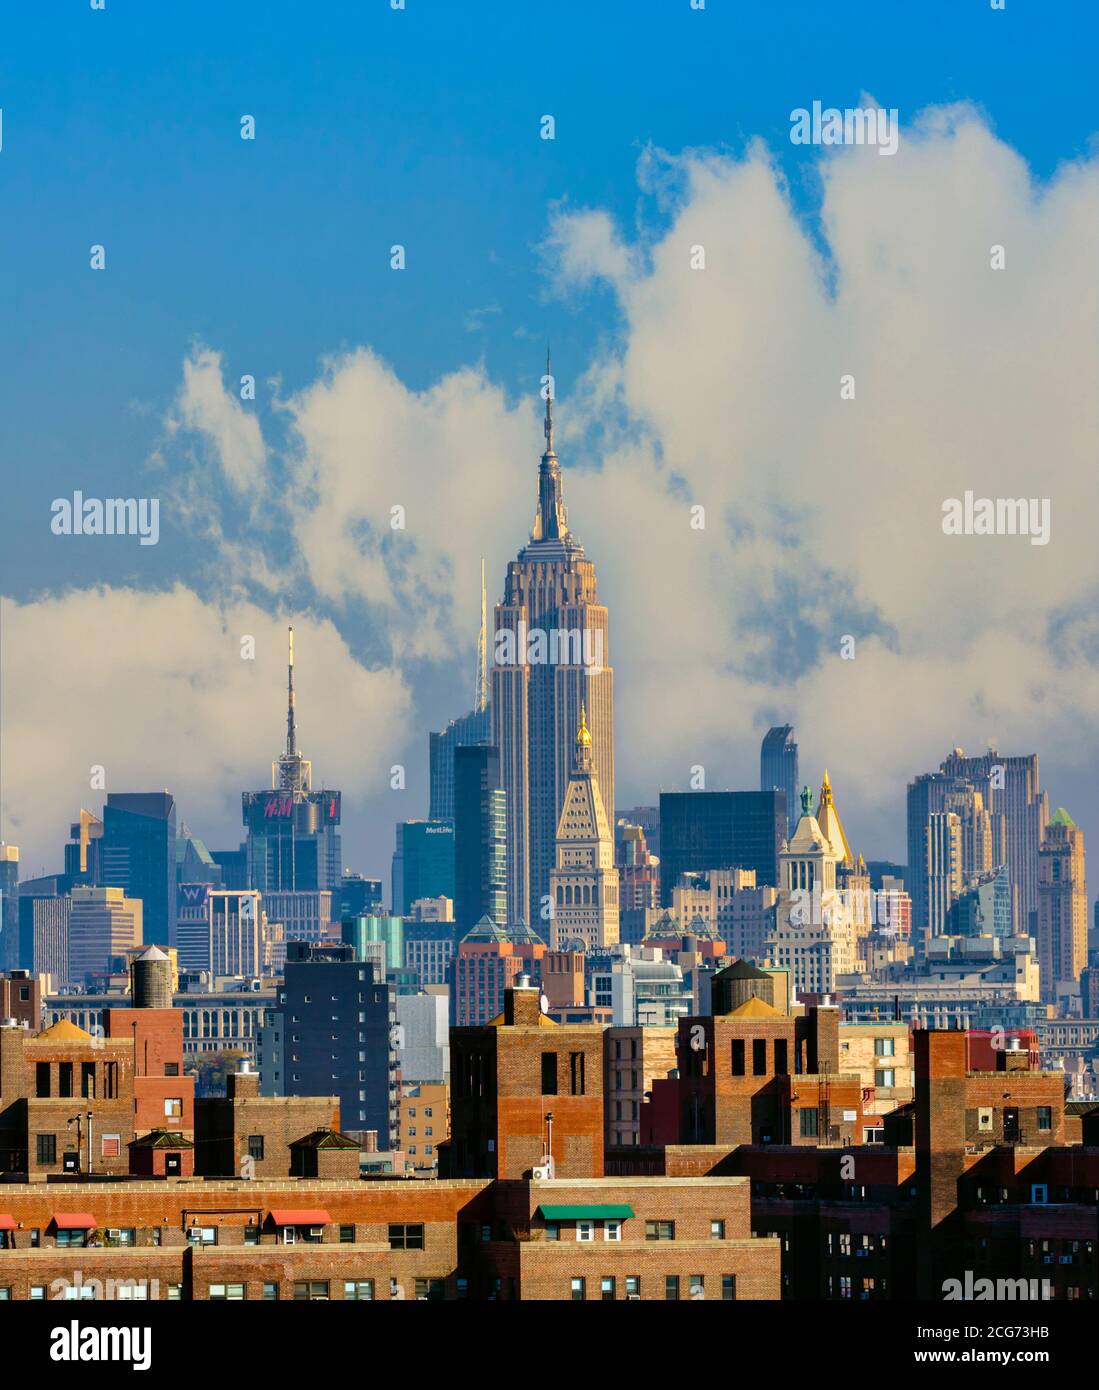 Nueva York, Estado de Nueva York, Estados Unidos de América. Horizonte de Manhattan con el edificio Empire State en el centro, visto desde el Puente de Brooklyn. Foto de stock